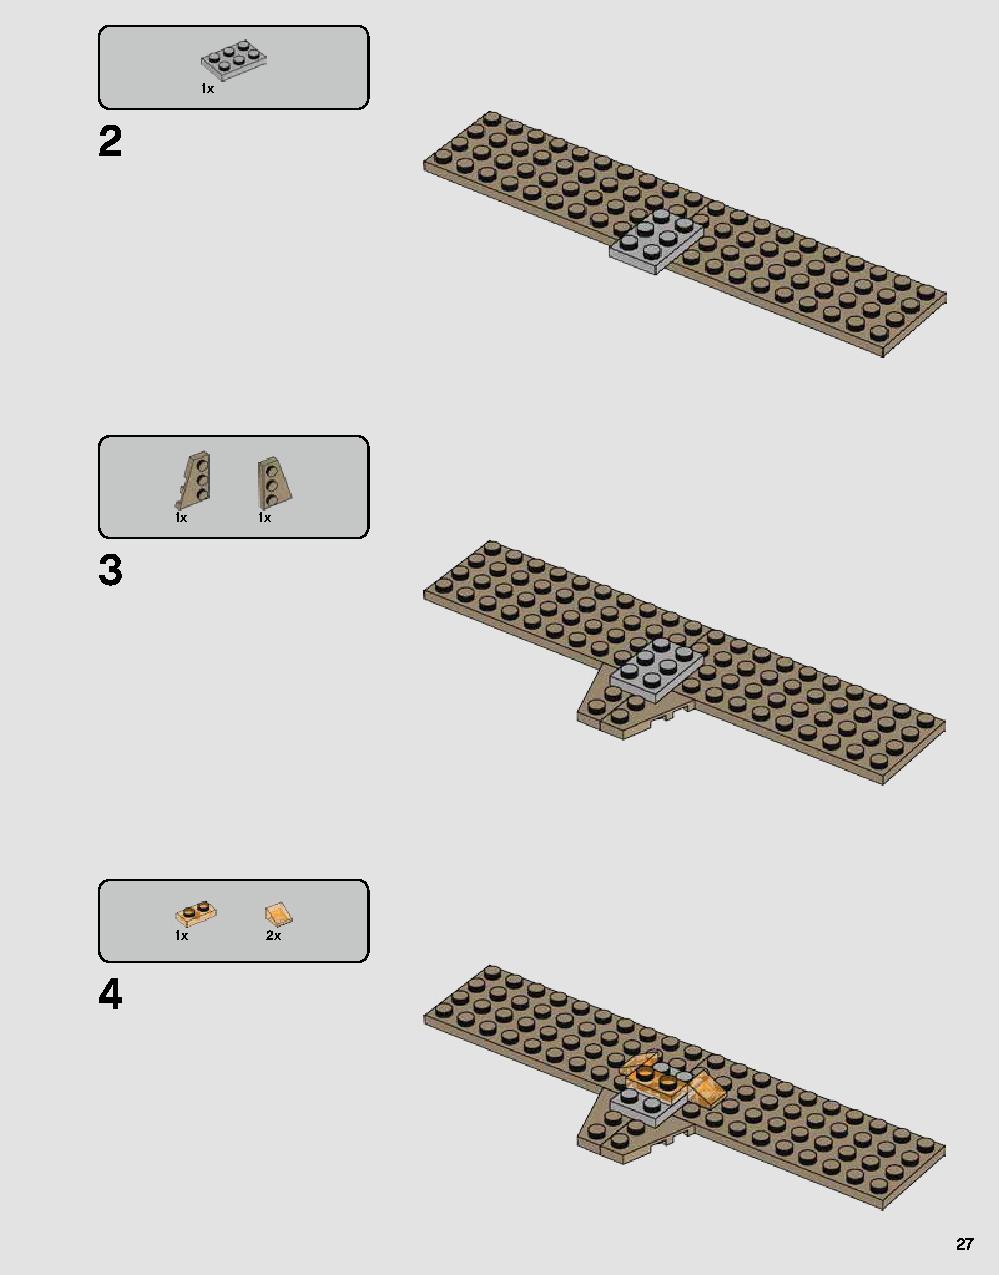 ダース・ベイダーの城 75251 レゴの商品情報 レゴの説明書・組立方法 27 page